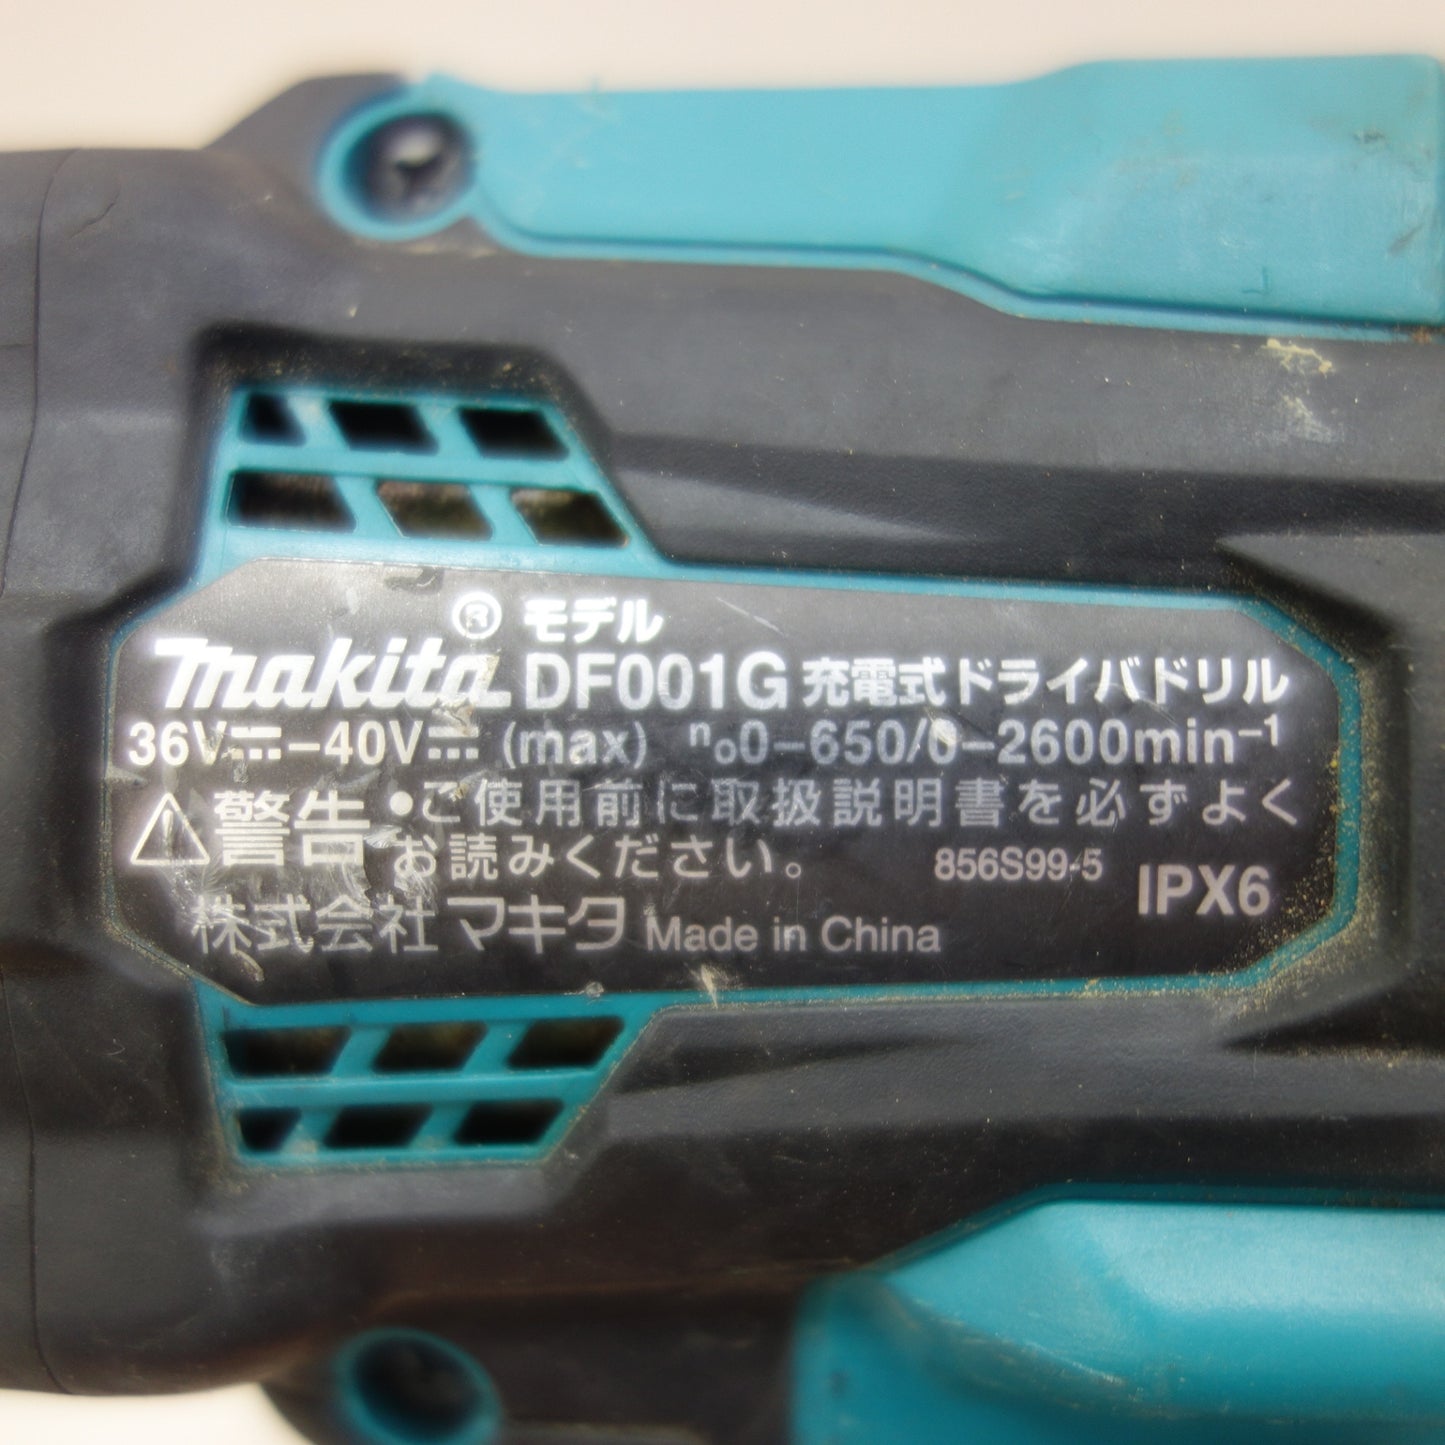 [送料無料] ☆マキタ 充電式 ドライバドリル DF001G 電動 工具 makita☆